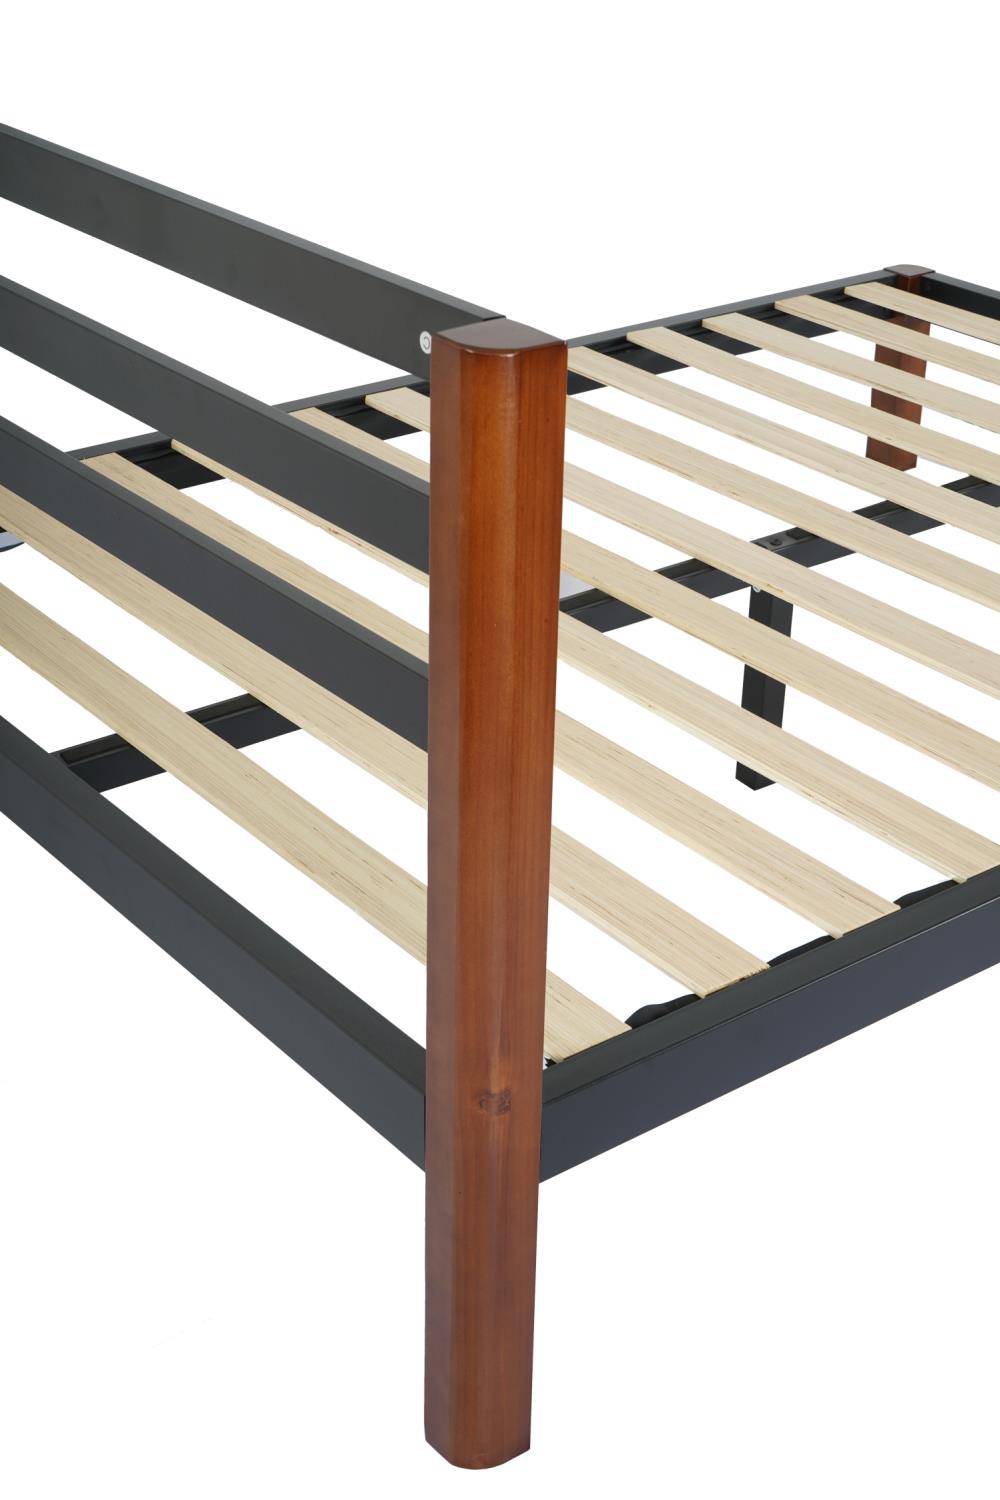 Baja Metal Platform Bed Frame with Slats - Black - Queen